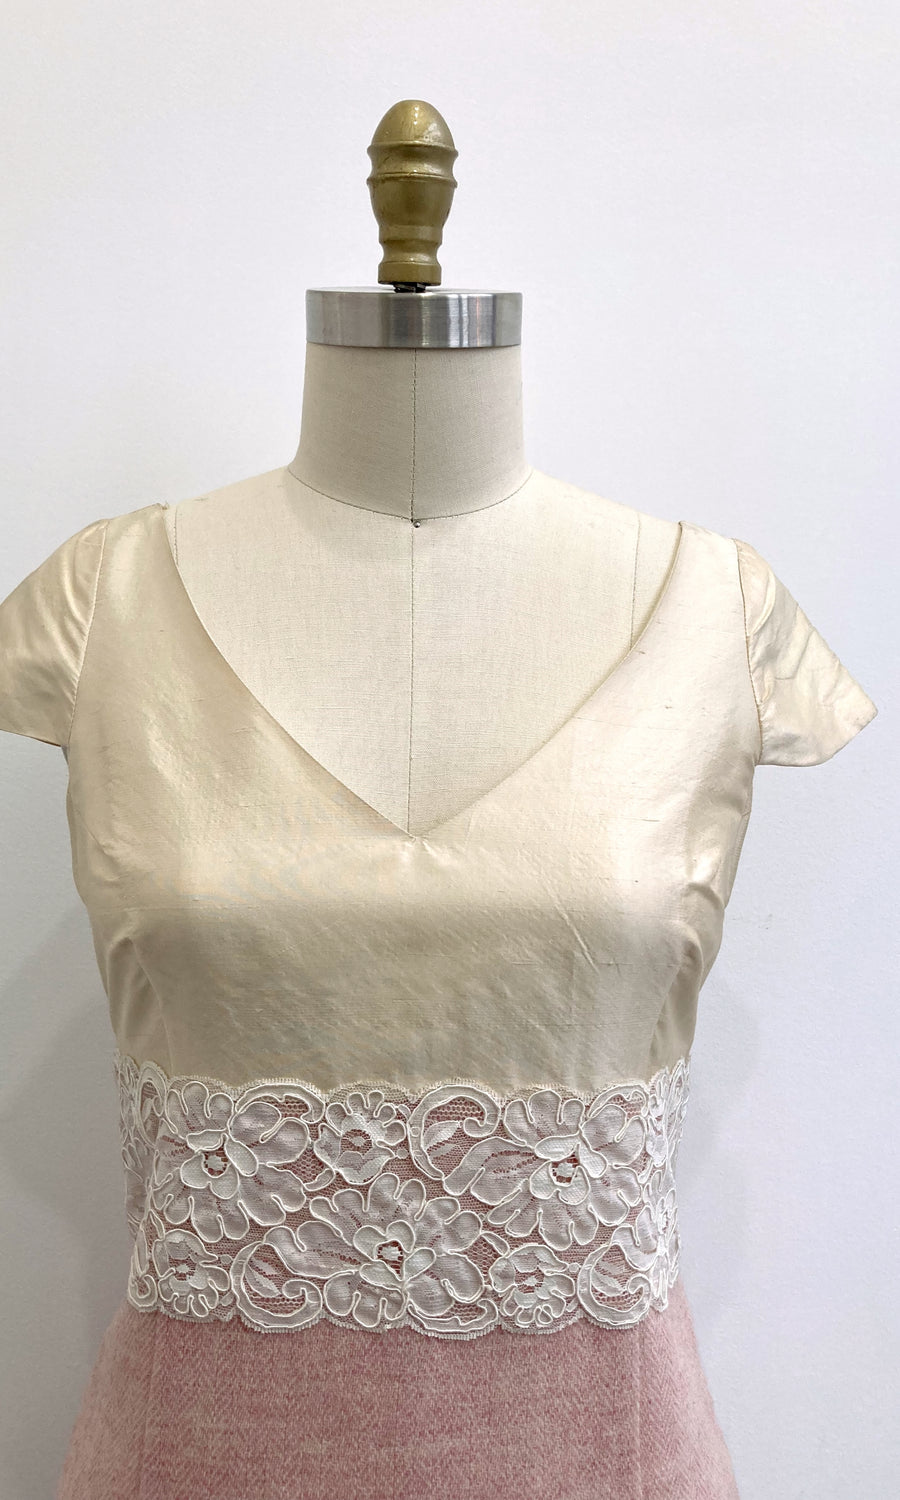 Ivory & Blush Mixed Media Sheath Dress, size Medium